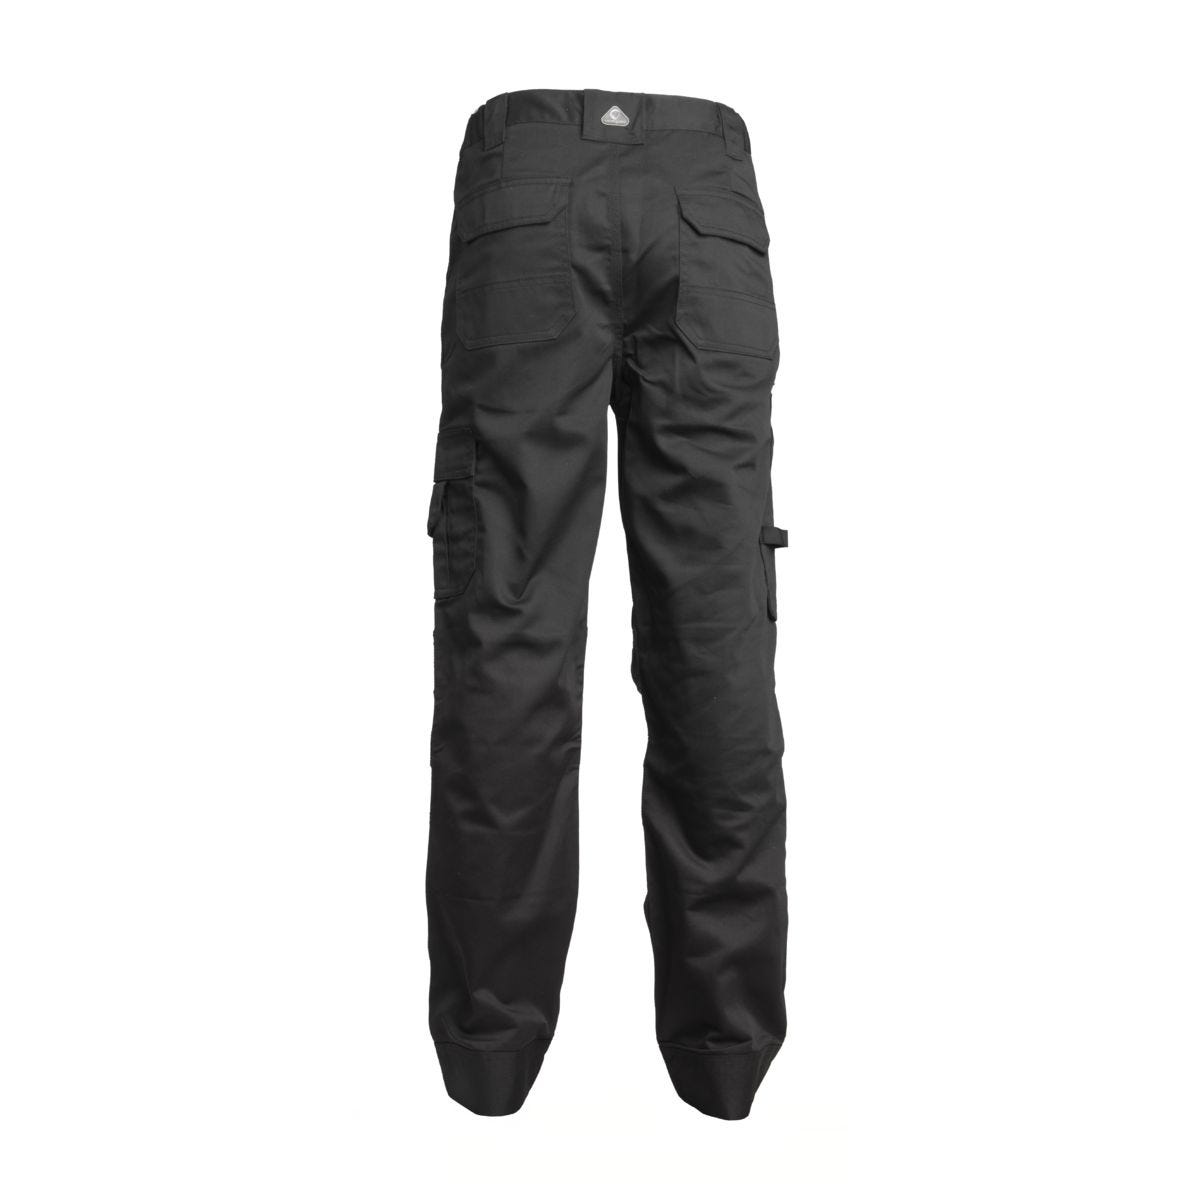 Pantalon CLASS noir - COVERGUARD - Taille 3XL 1